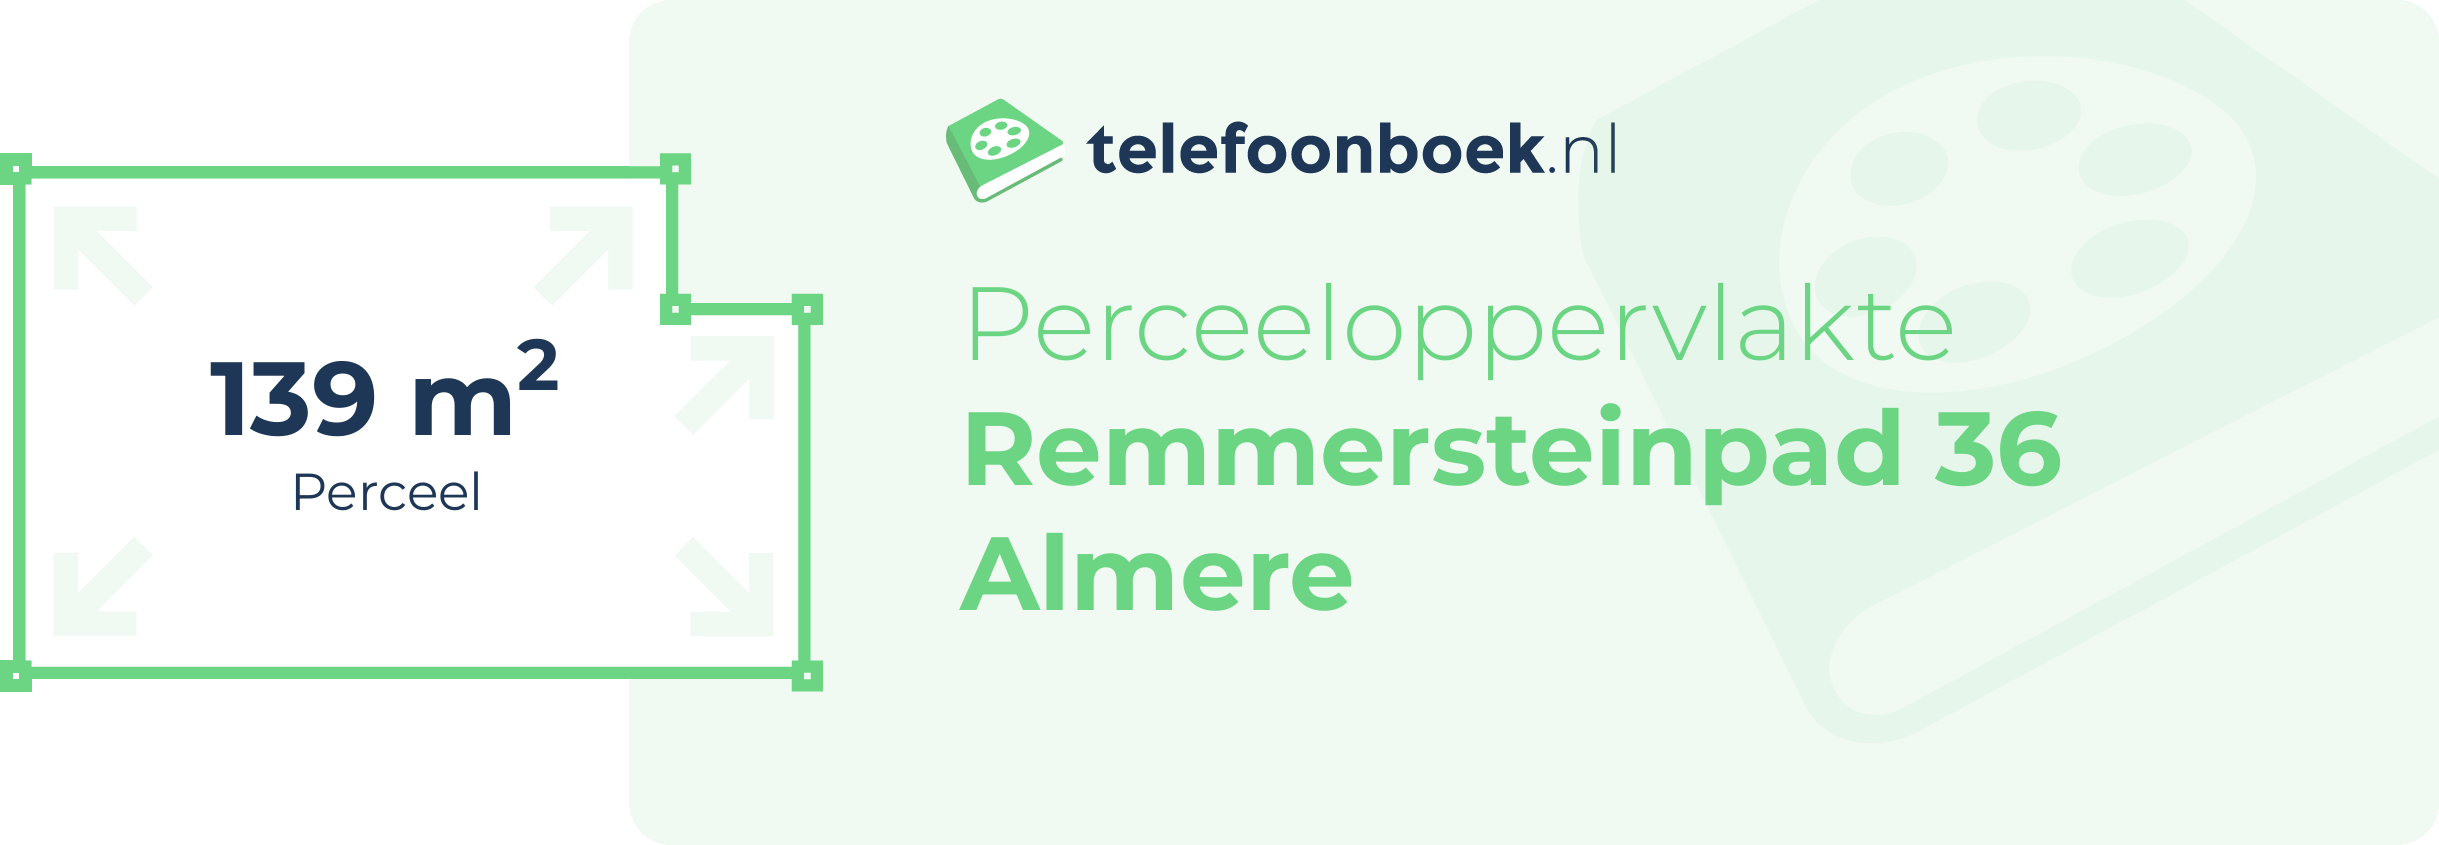 Perceeloppervlakte Remmersteinpad 36 Almere